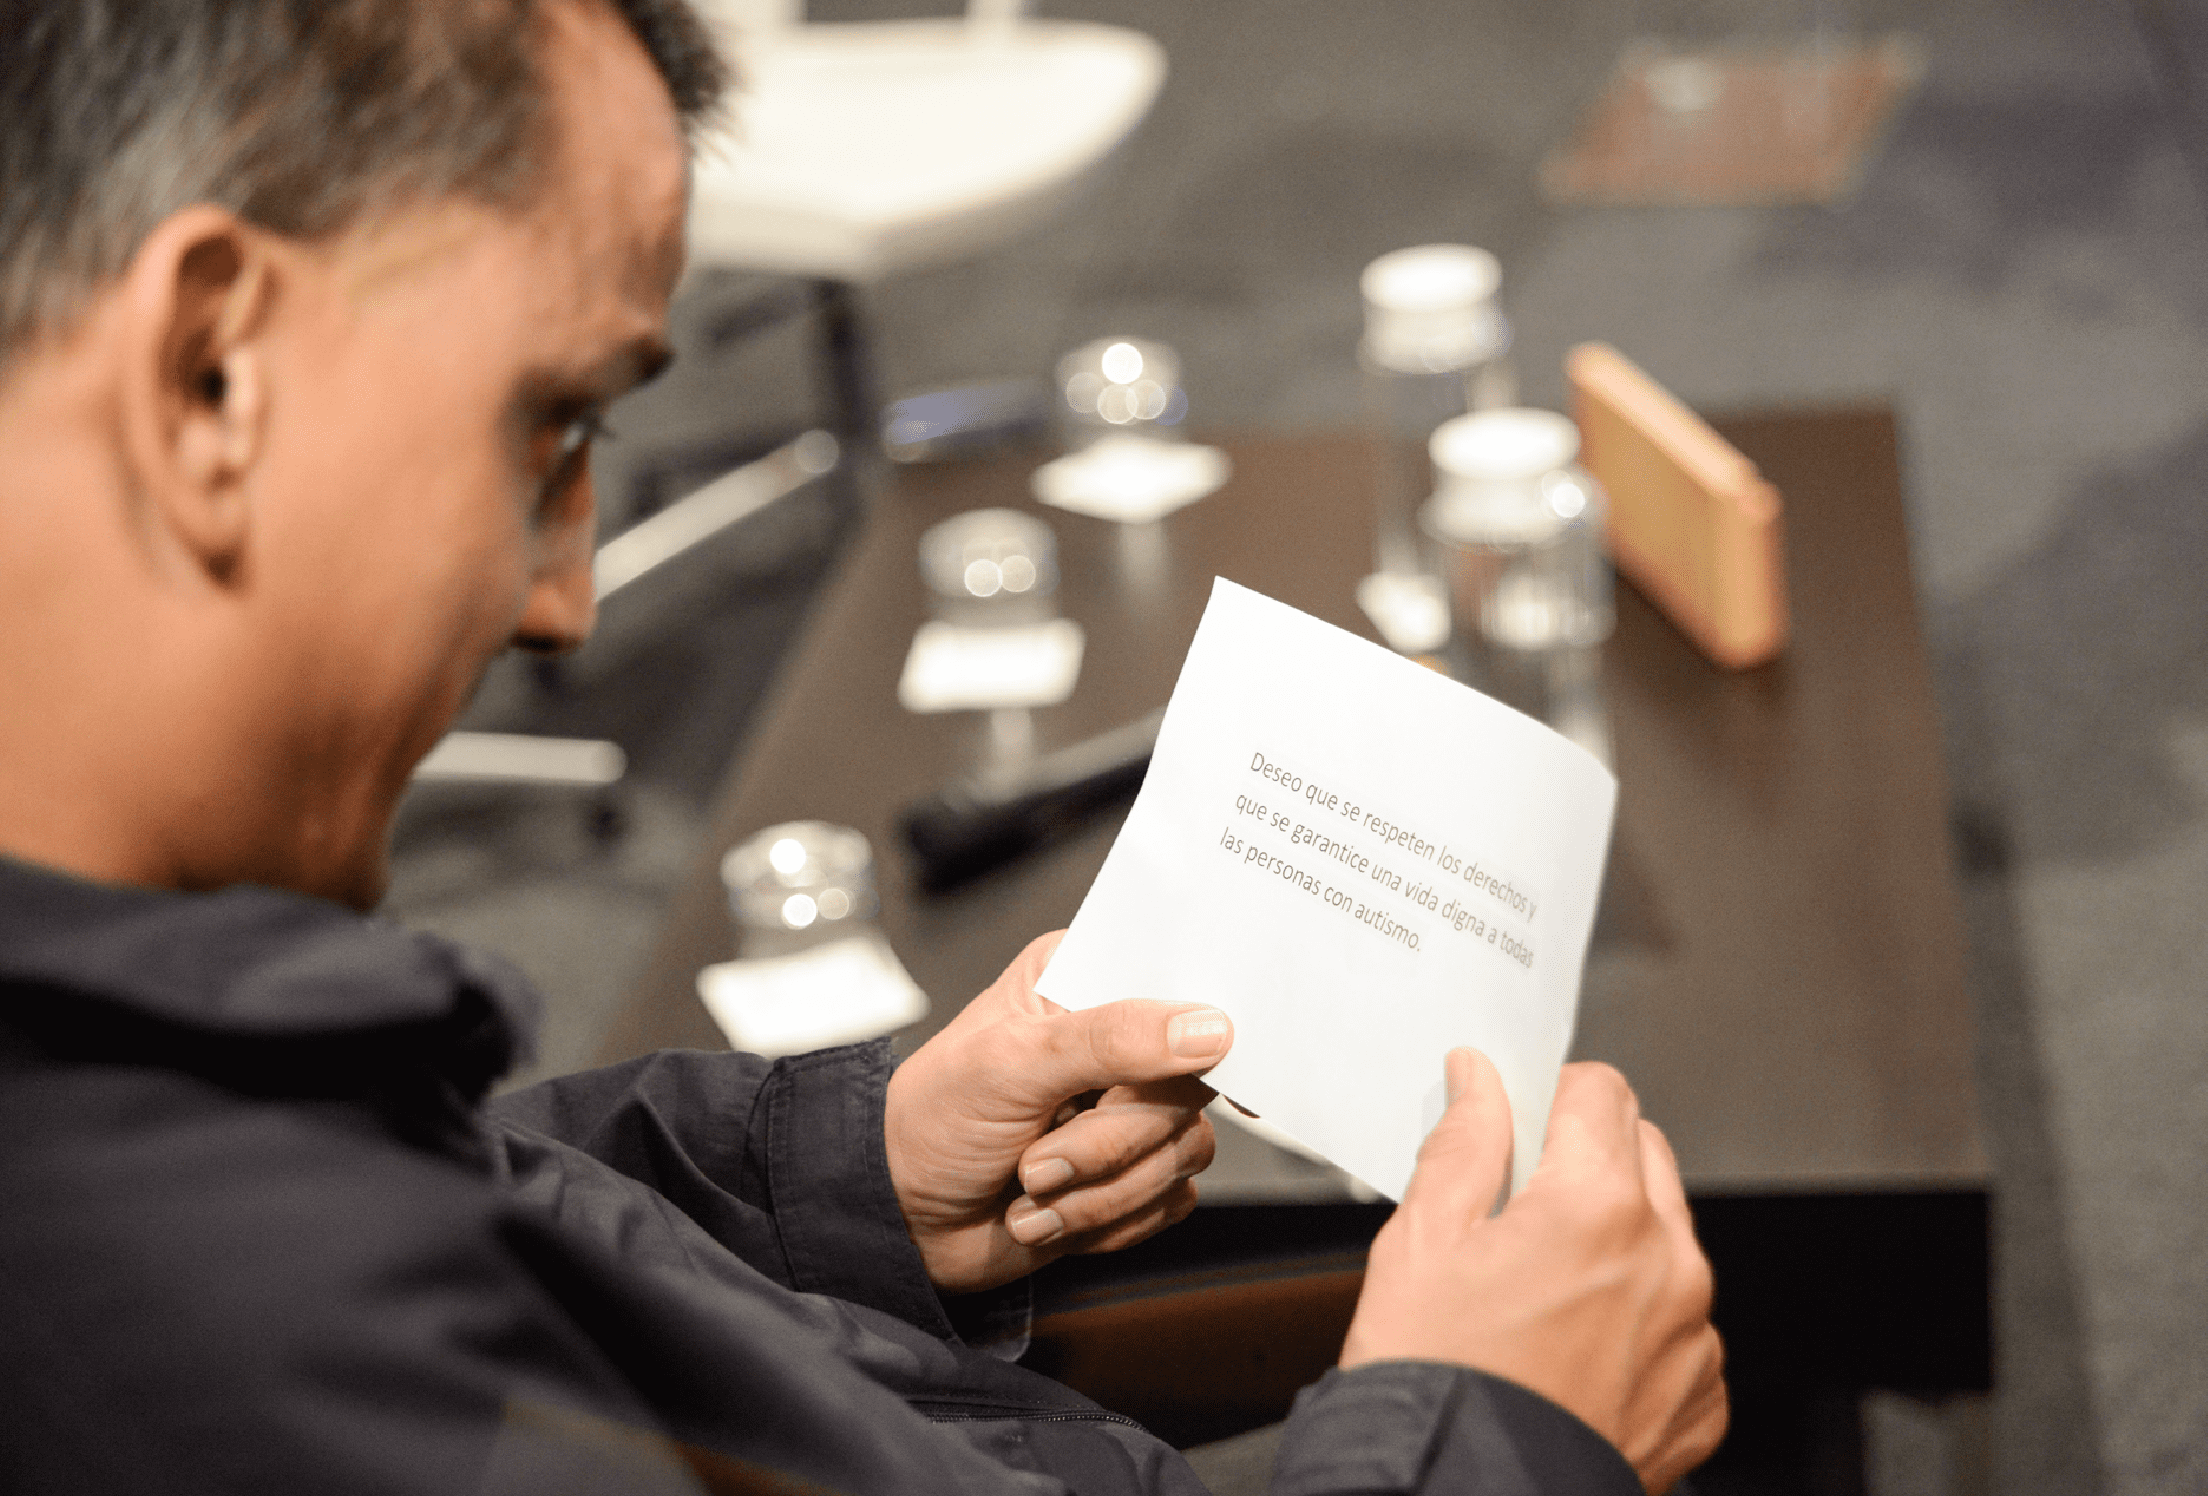 Persona con autismo leyendo una frase escrita en una tarjeta